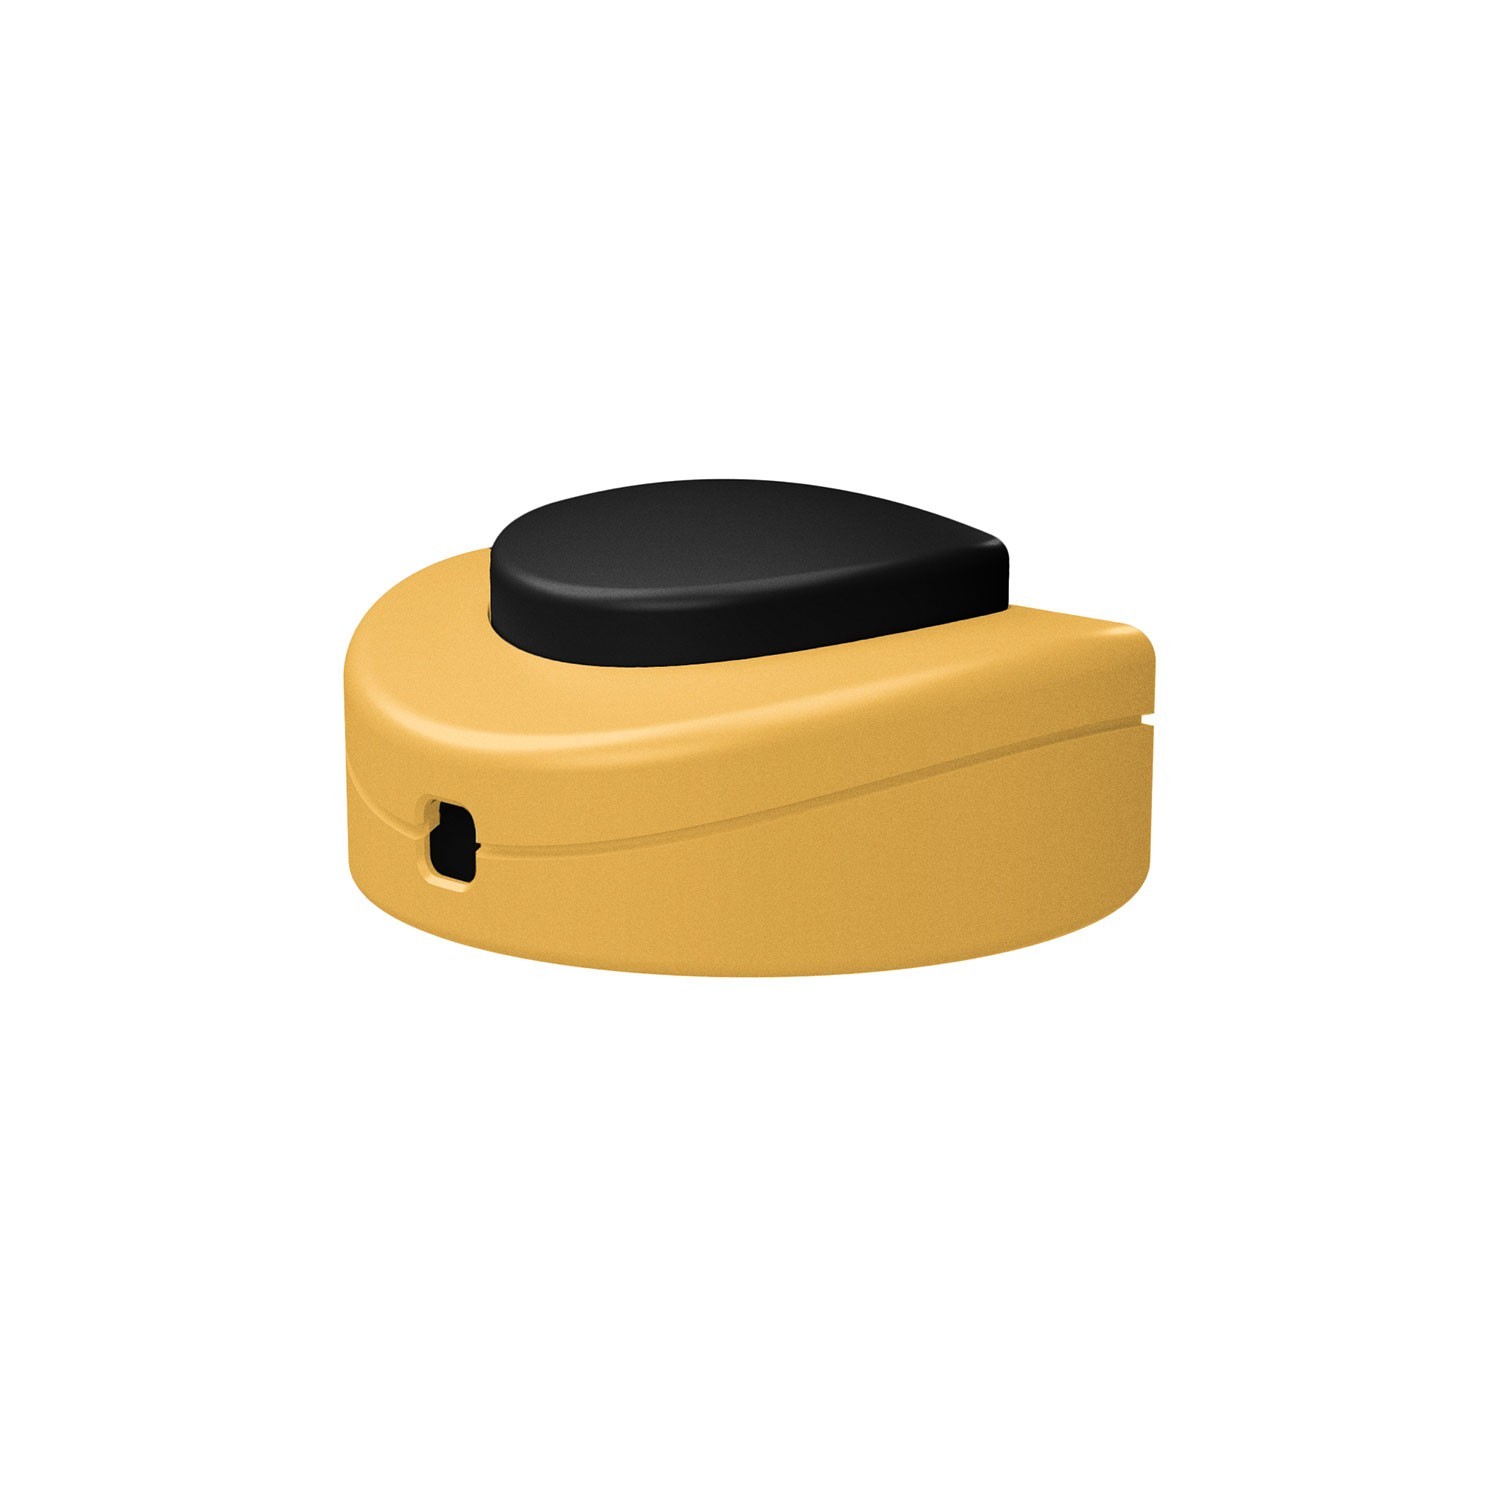 Prolazni jednopolni nožni prekidač Creative Switch žuti senf